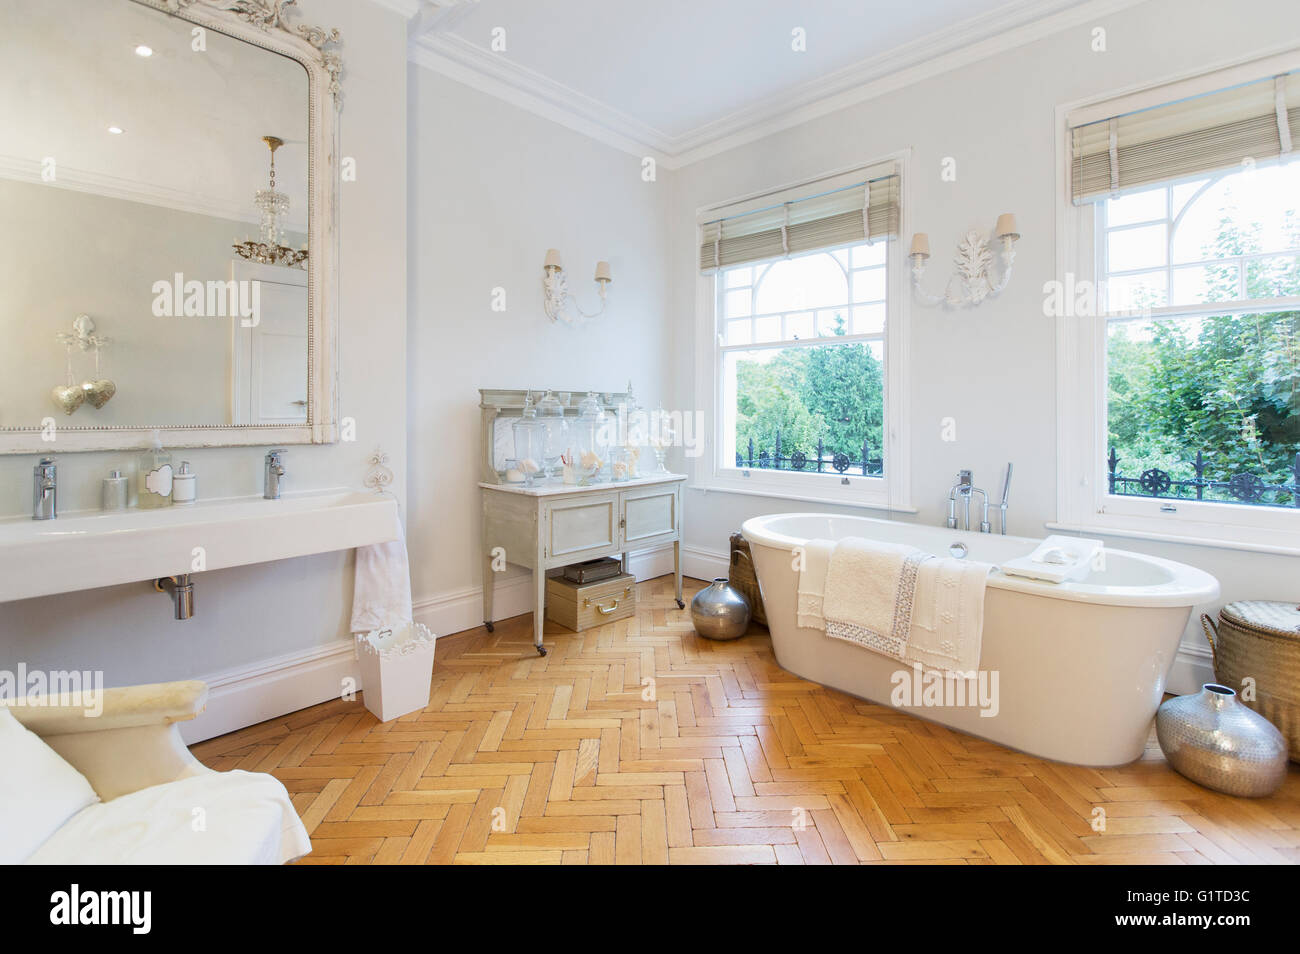 Home Vetrina interno bagno con pavimenti in parquet Foto Stock